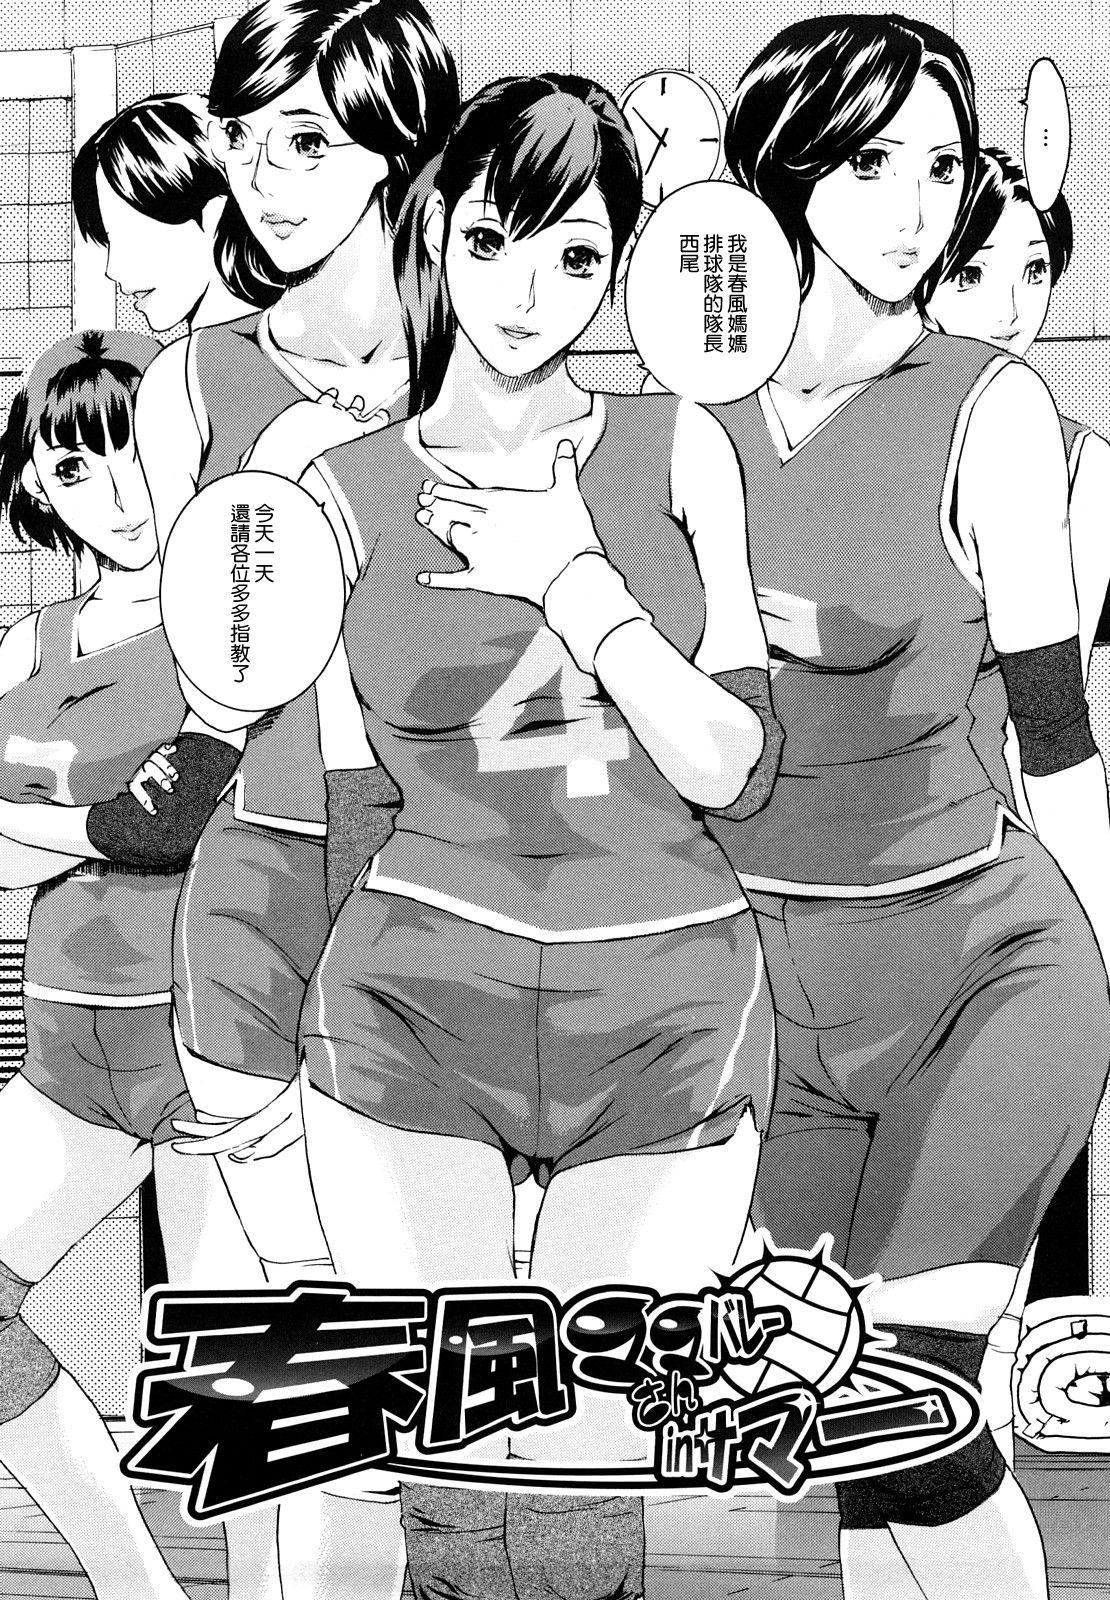 Harukaze Mama-san Volley in Summer 2